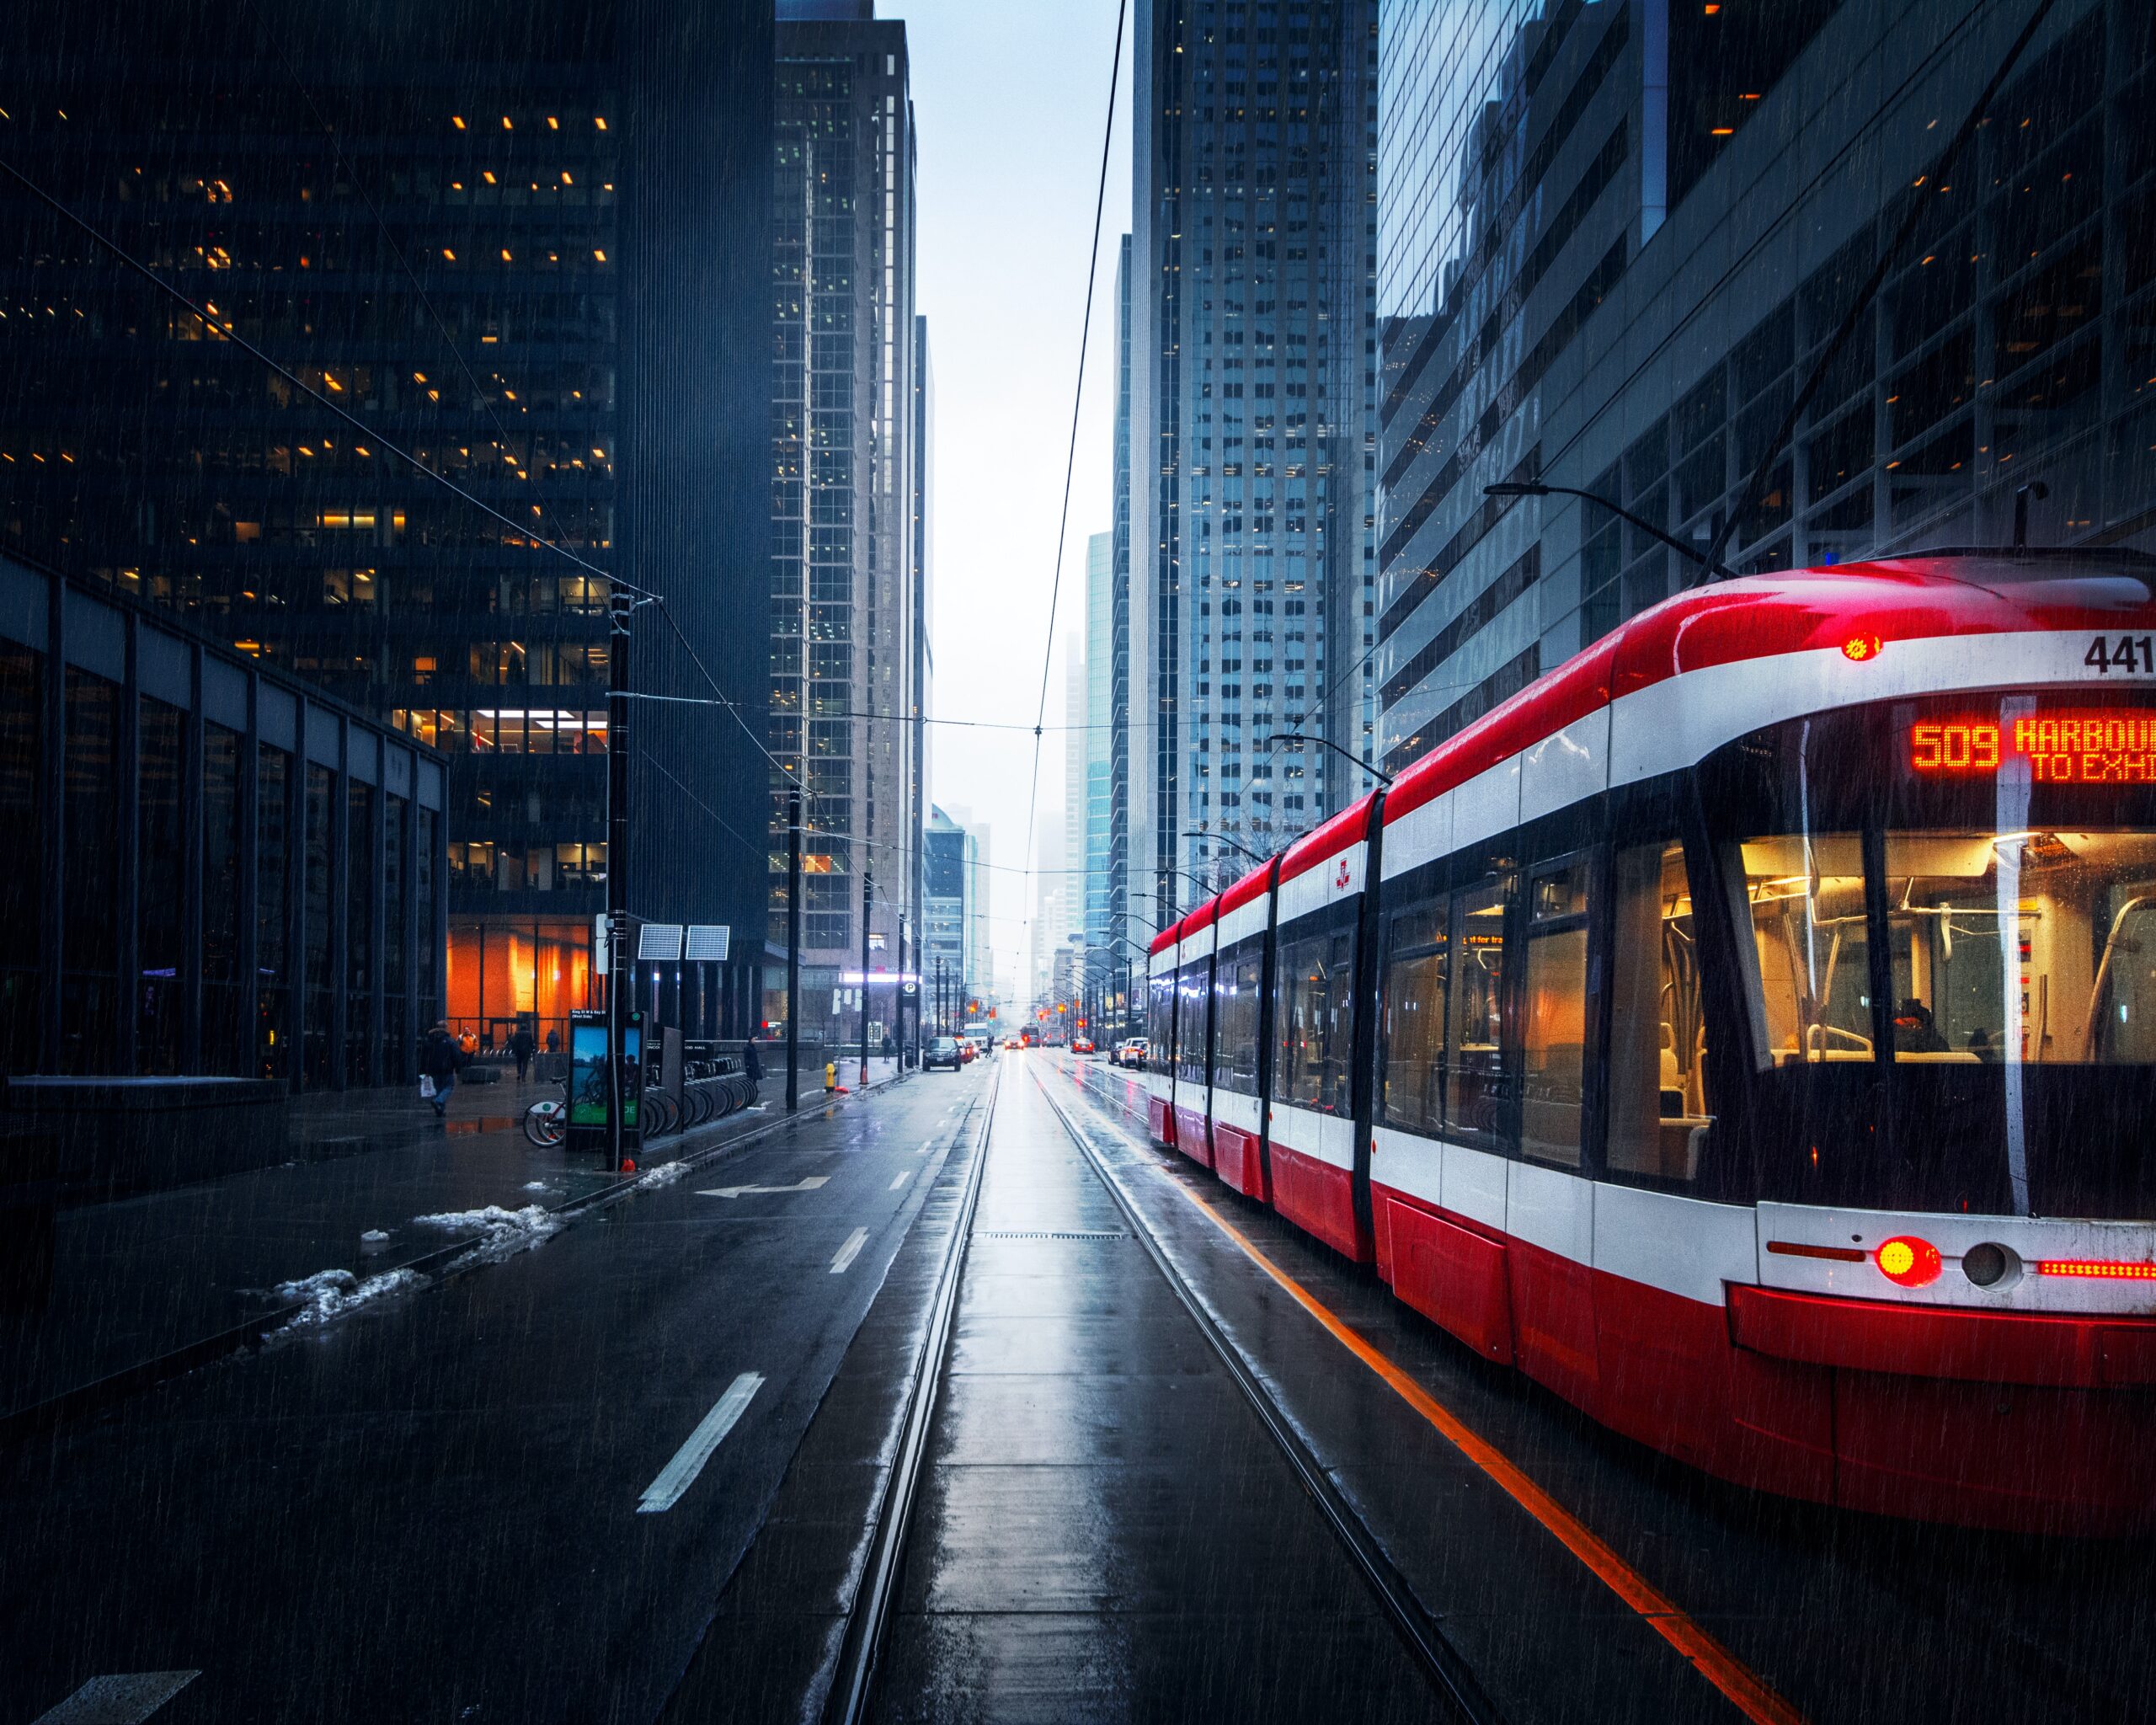 A tram runs through the center of Toronto